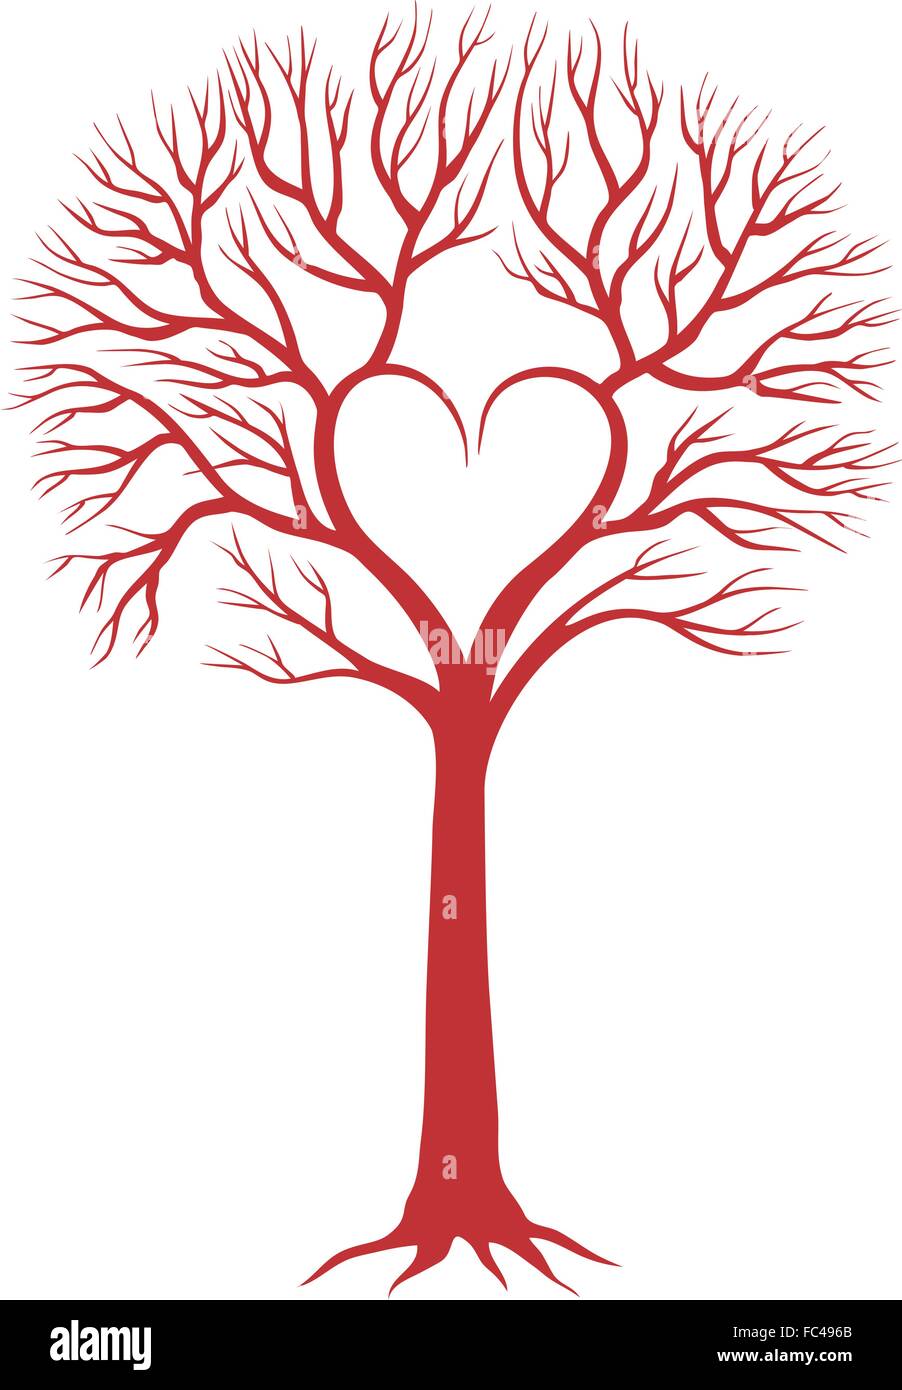 Rote Liebe Baum mit herzförmigen Niederlassungen für Hochzeitseinladungen, Valentines Tag Karten, Vektor, Abbildung Stock Vektor